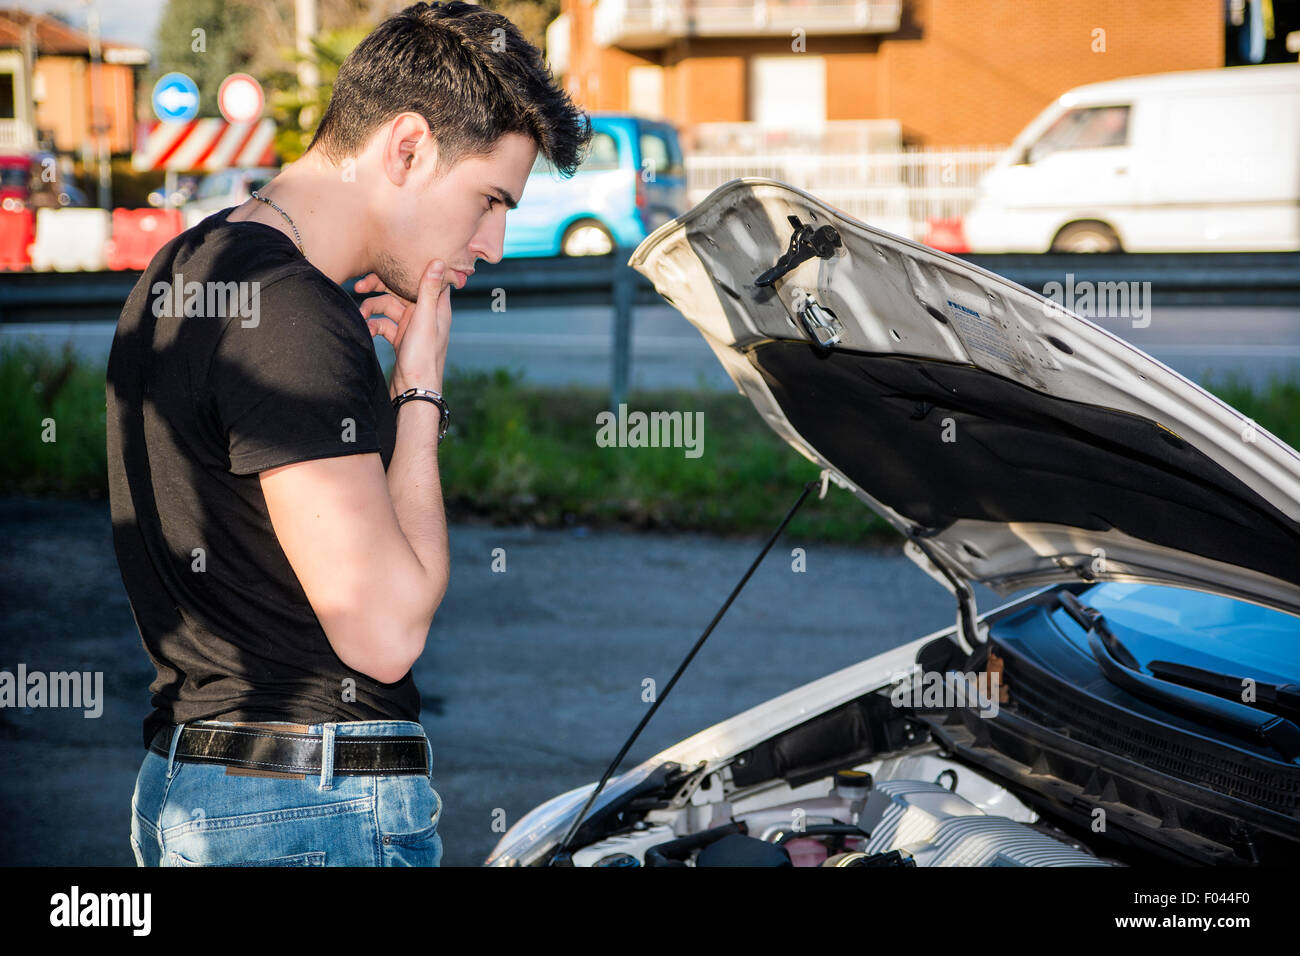 Hübscher junger Mann versucht, einen Automotor, reparieren Blick in offene Motorhaube Stockfoto